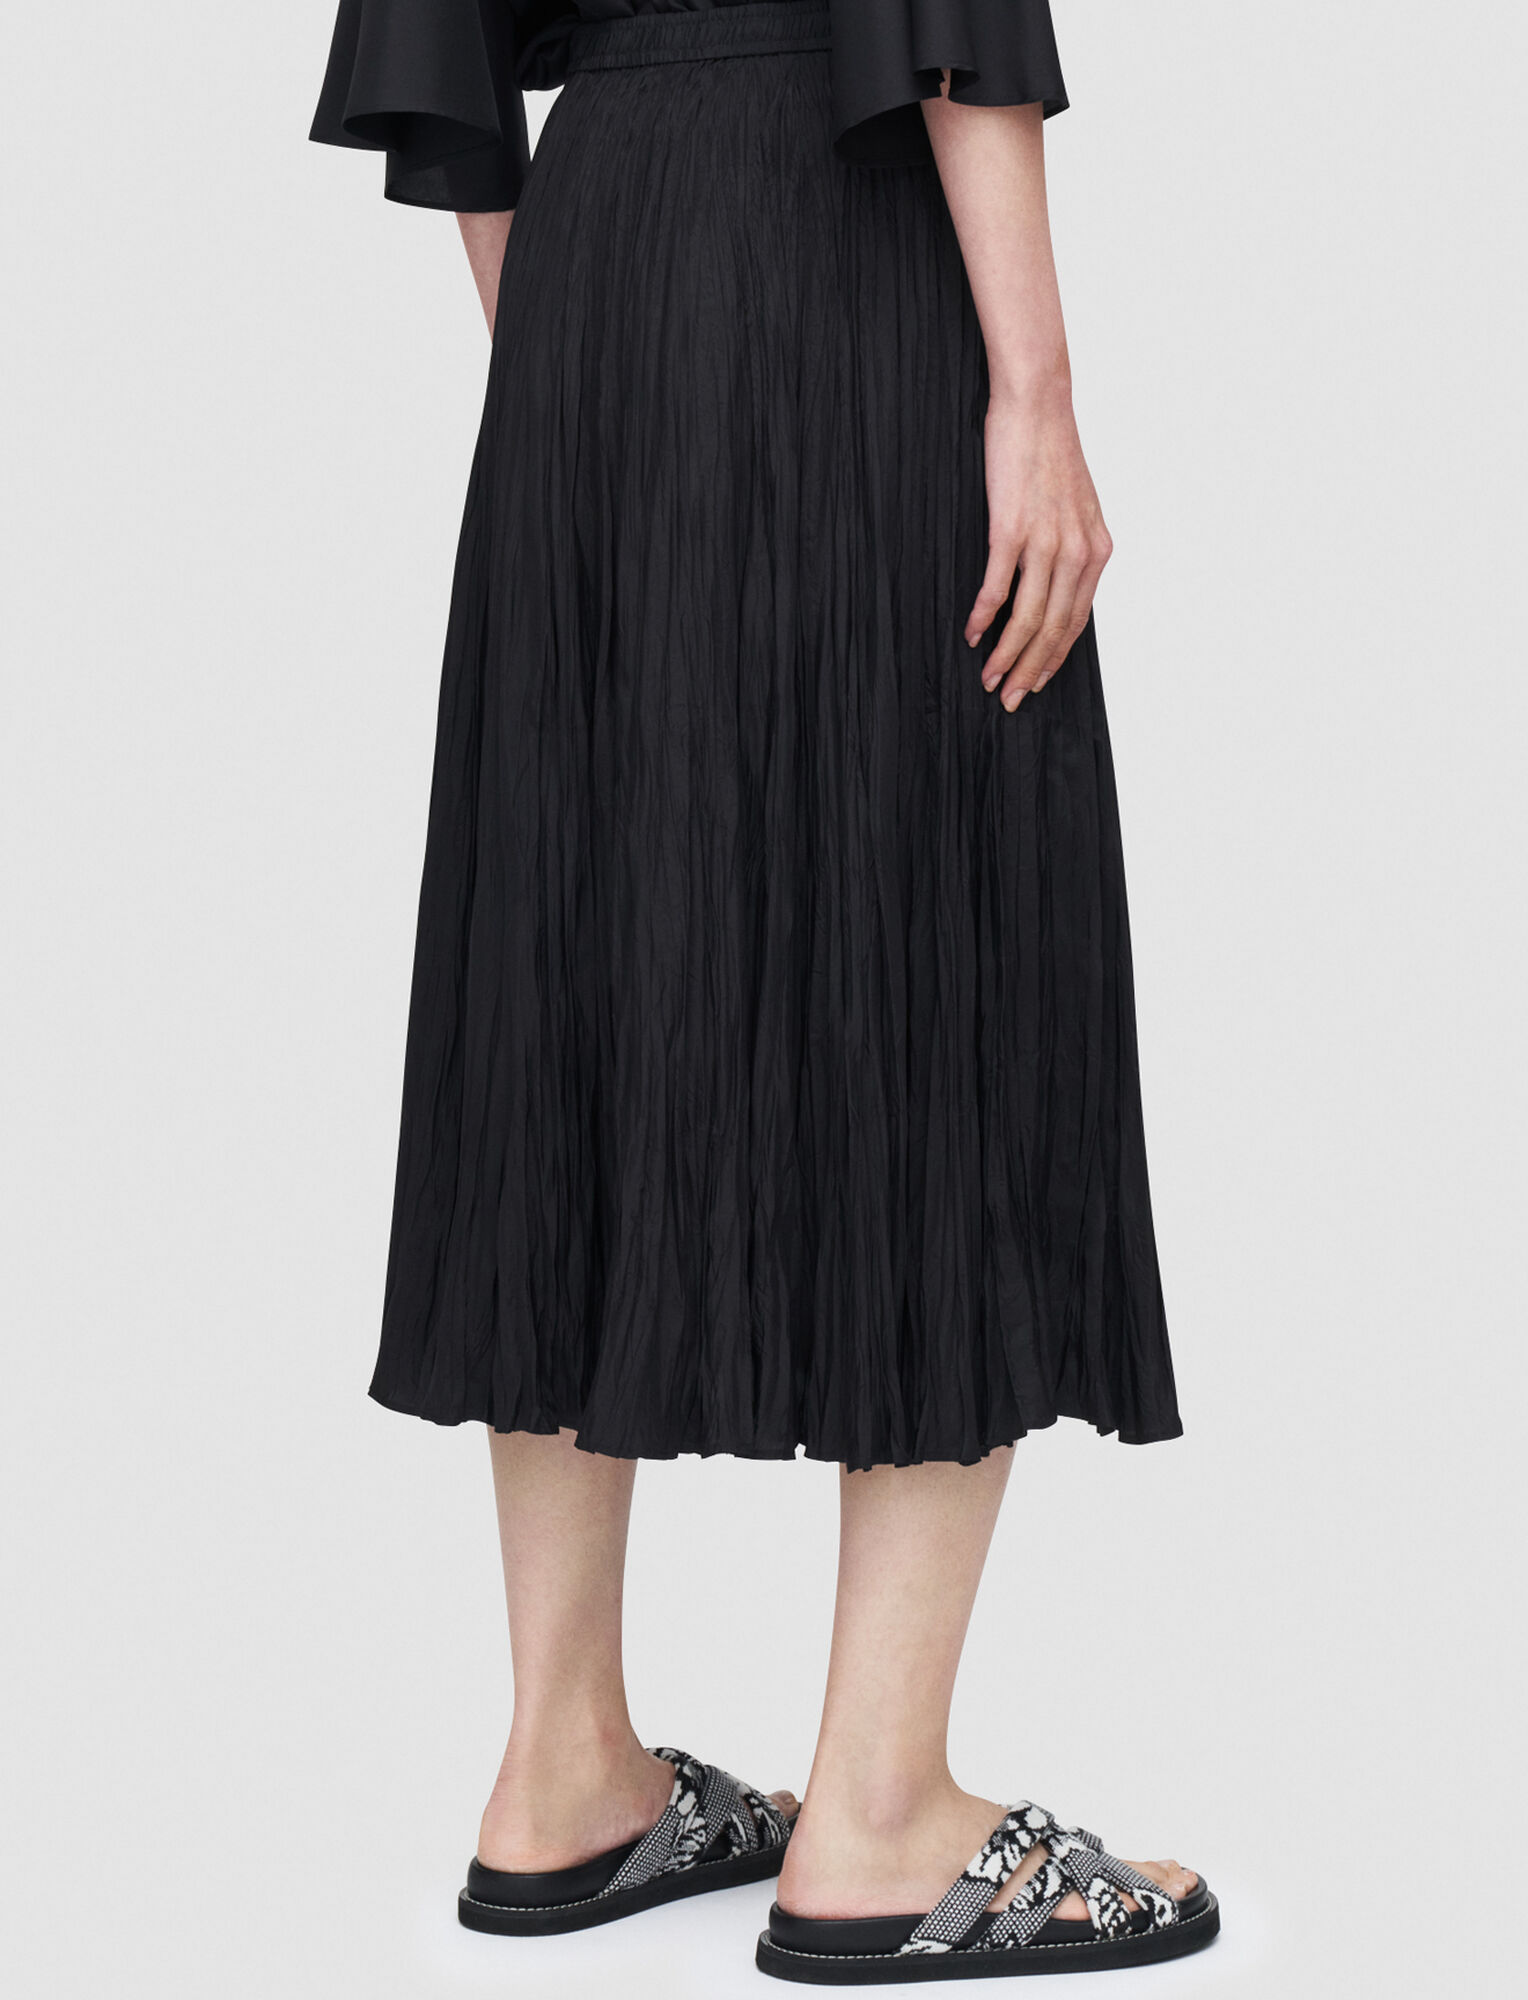 Joseph, Silk Habotai Sully Skirt – Shorter Length, in Black